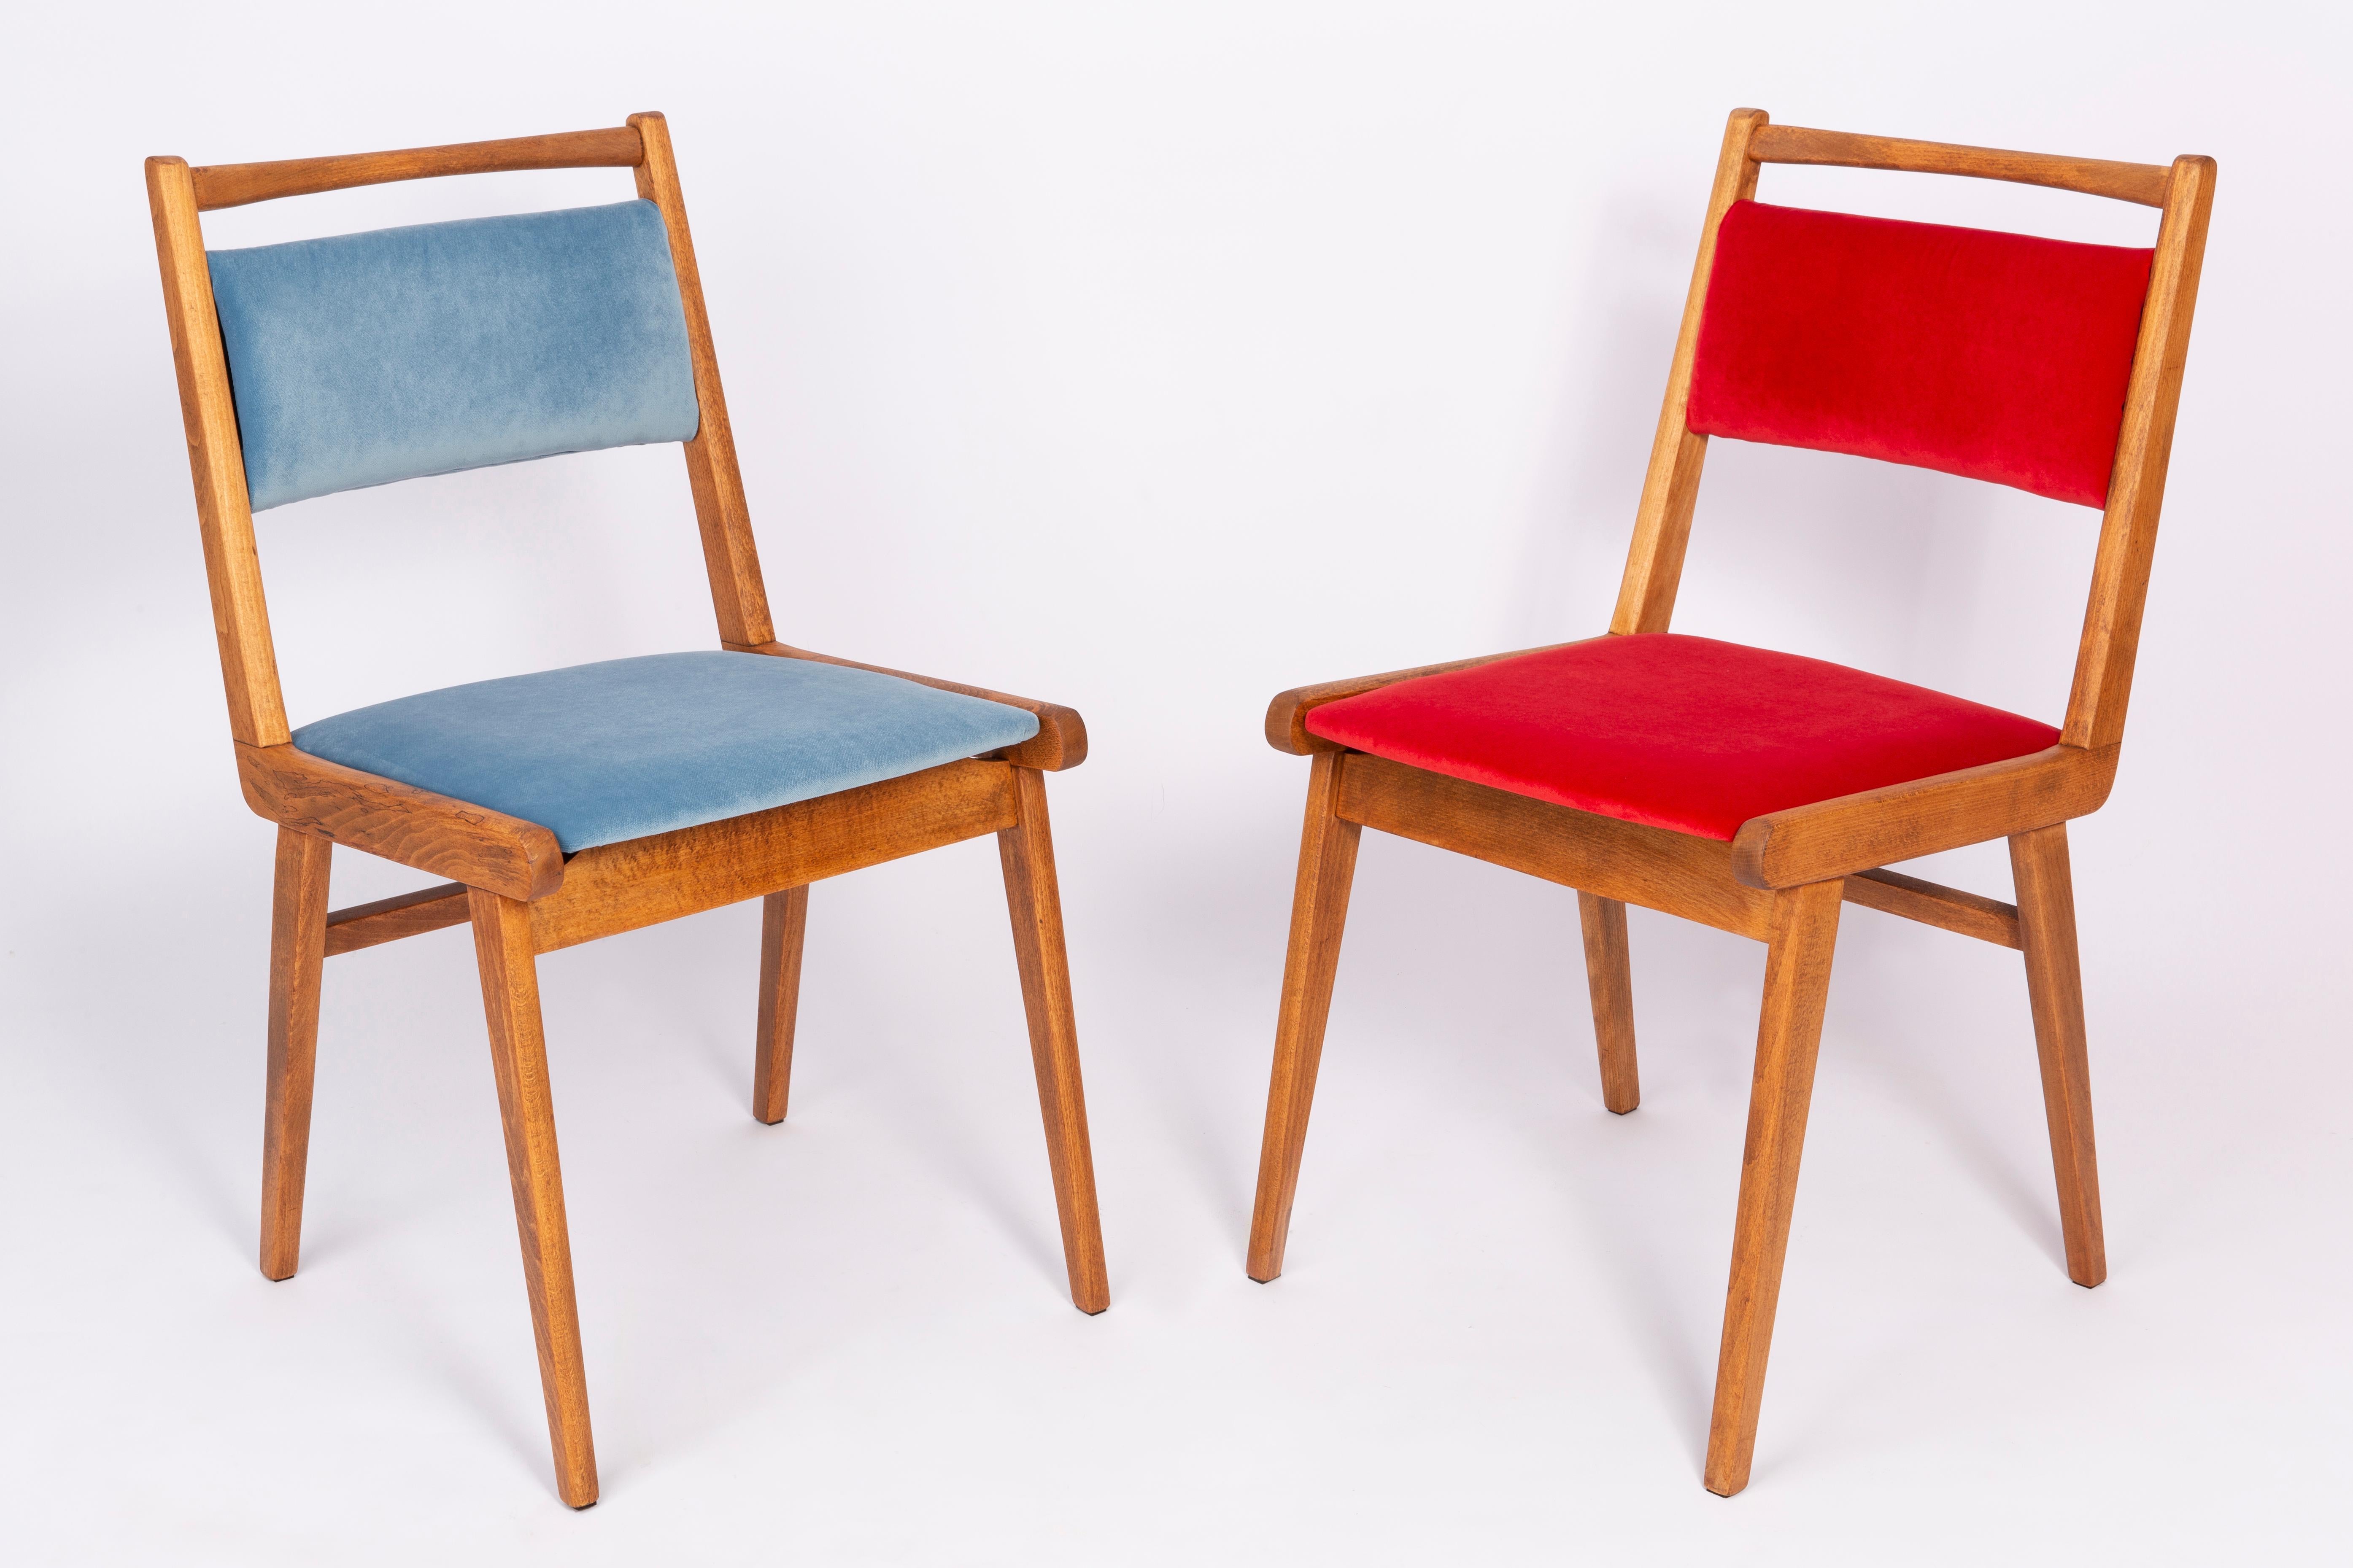 Chaises conçues par le professeur Rajmund Halas. C'est un modèle de type JAR. Fabriqué en bois de hêtre. Les chaises ont été entièrement rénovées et les boiseries ont été rafraîchies. L'assise et le dossier sont habillés d'un tissu en velours